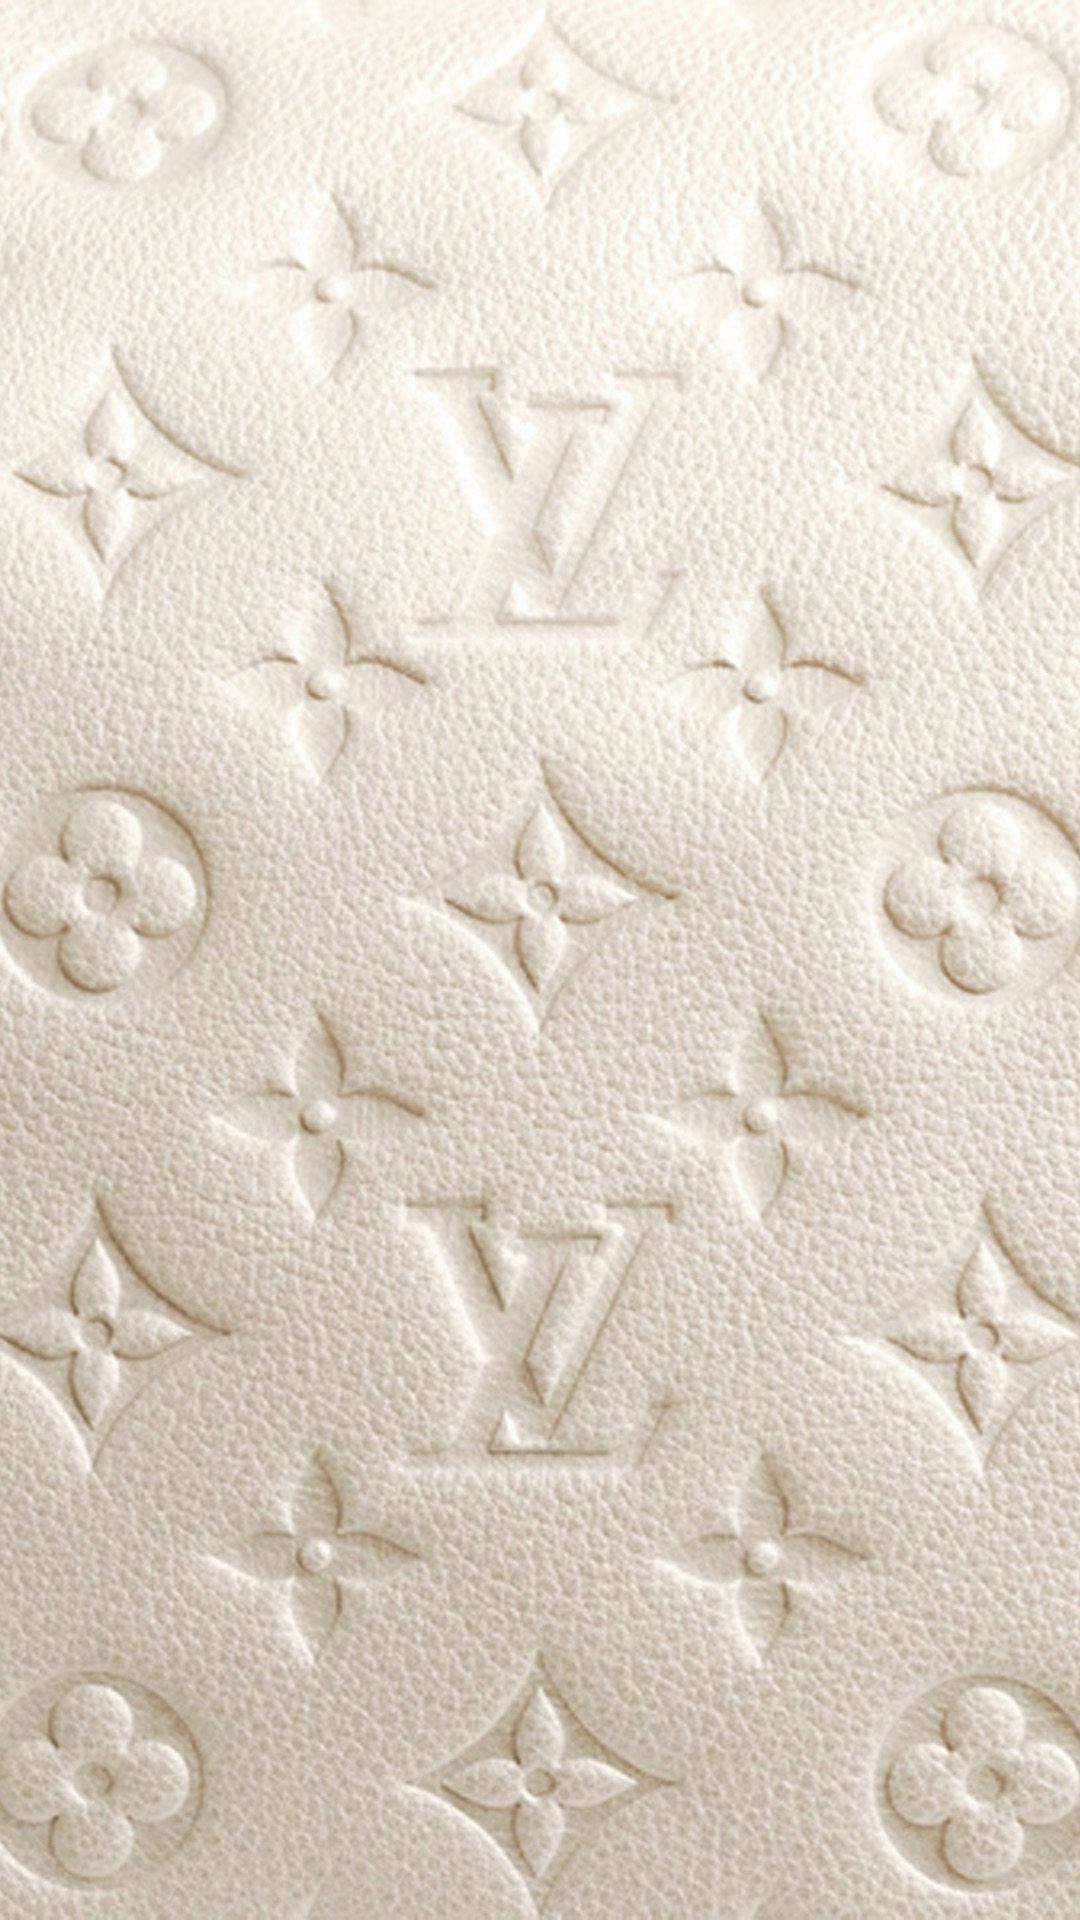 Louie Vuitton Wallpaper